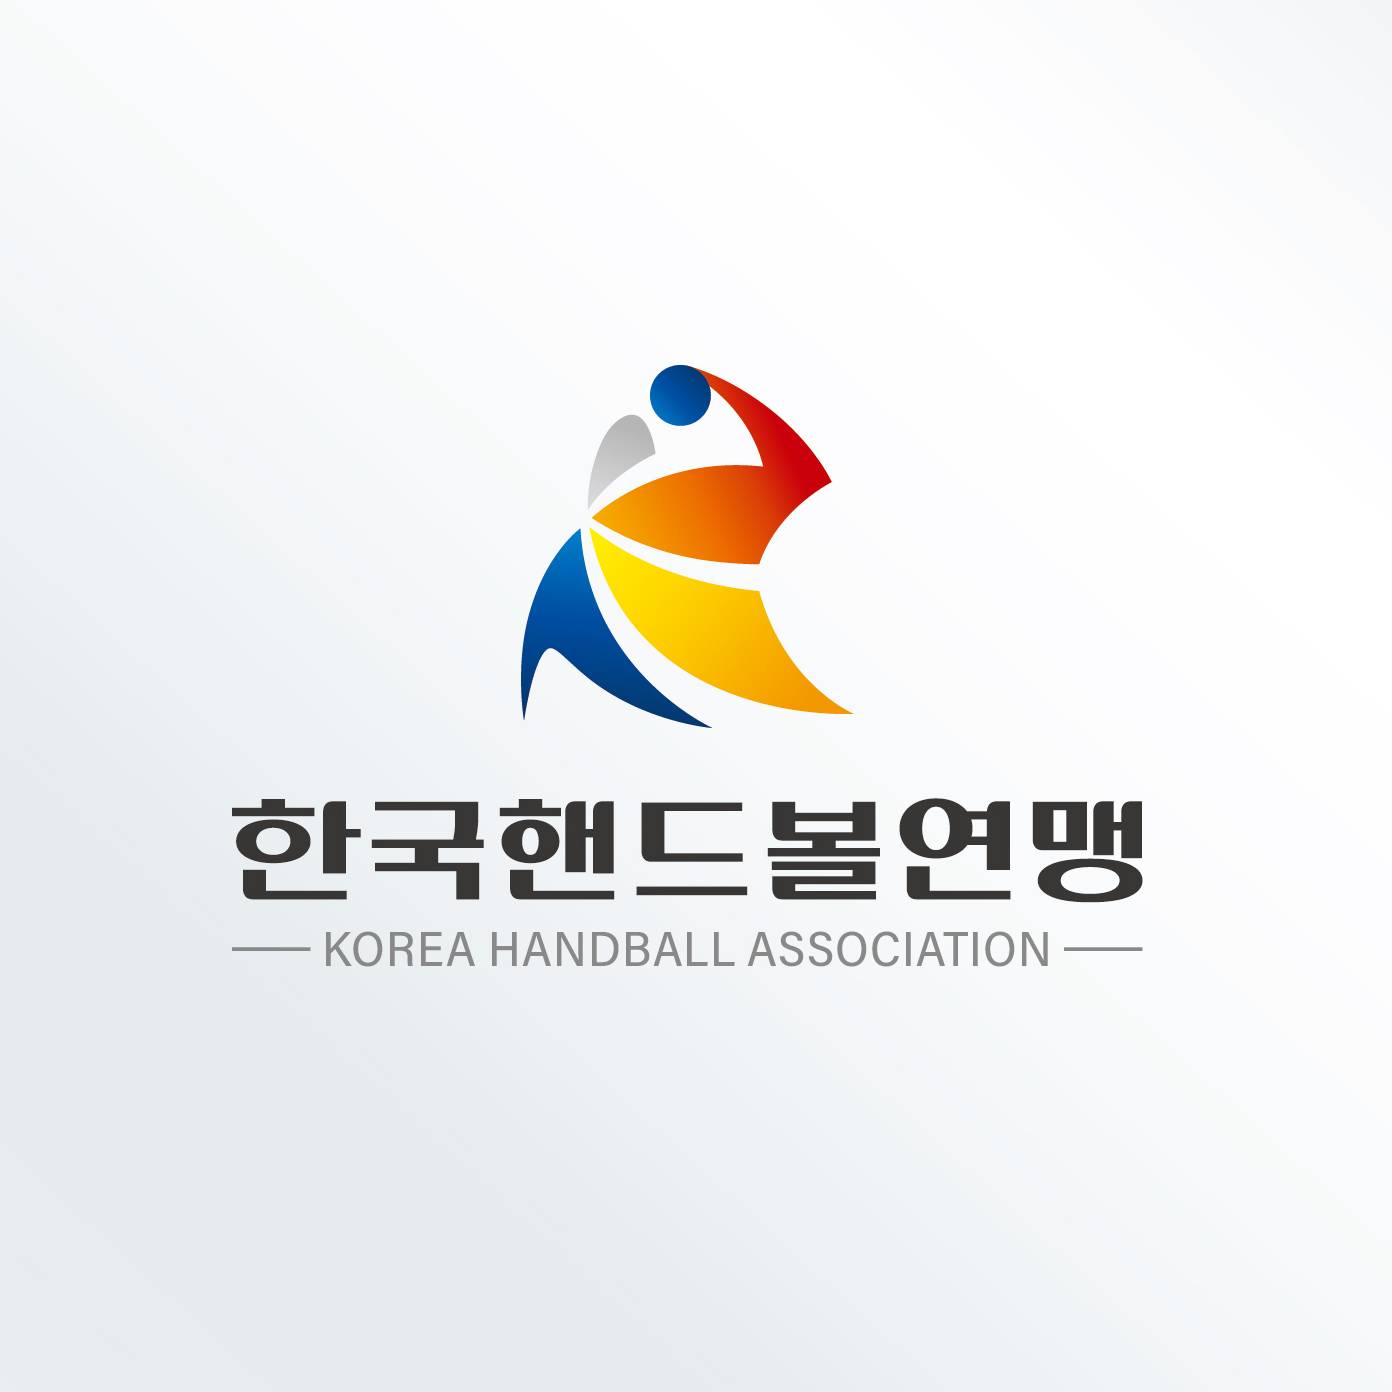  | 한국핸드볼연맹 로고 및 심볼 콘테스트 | 라우드소싱 포트폴리오